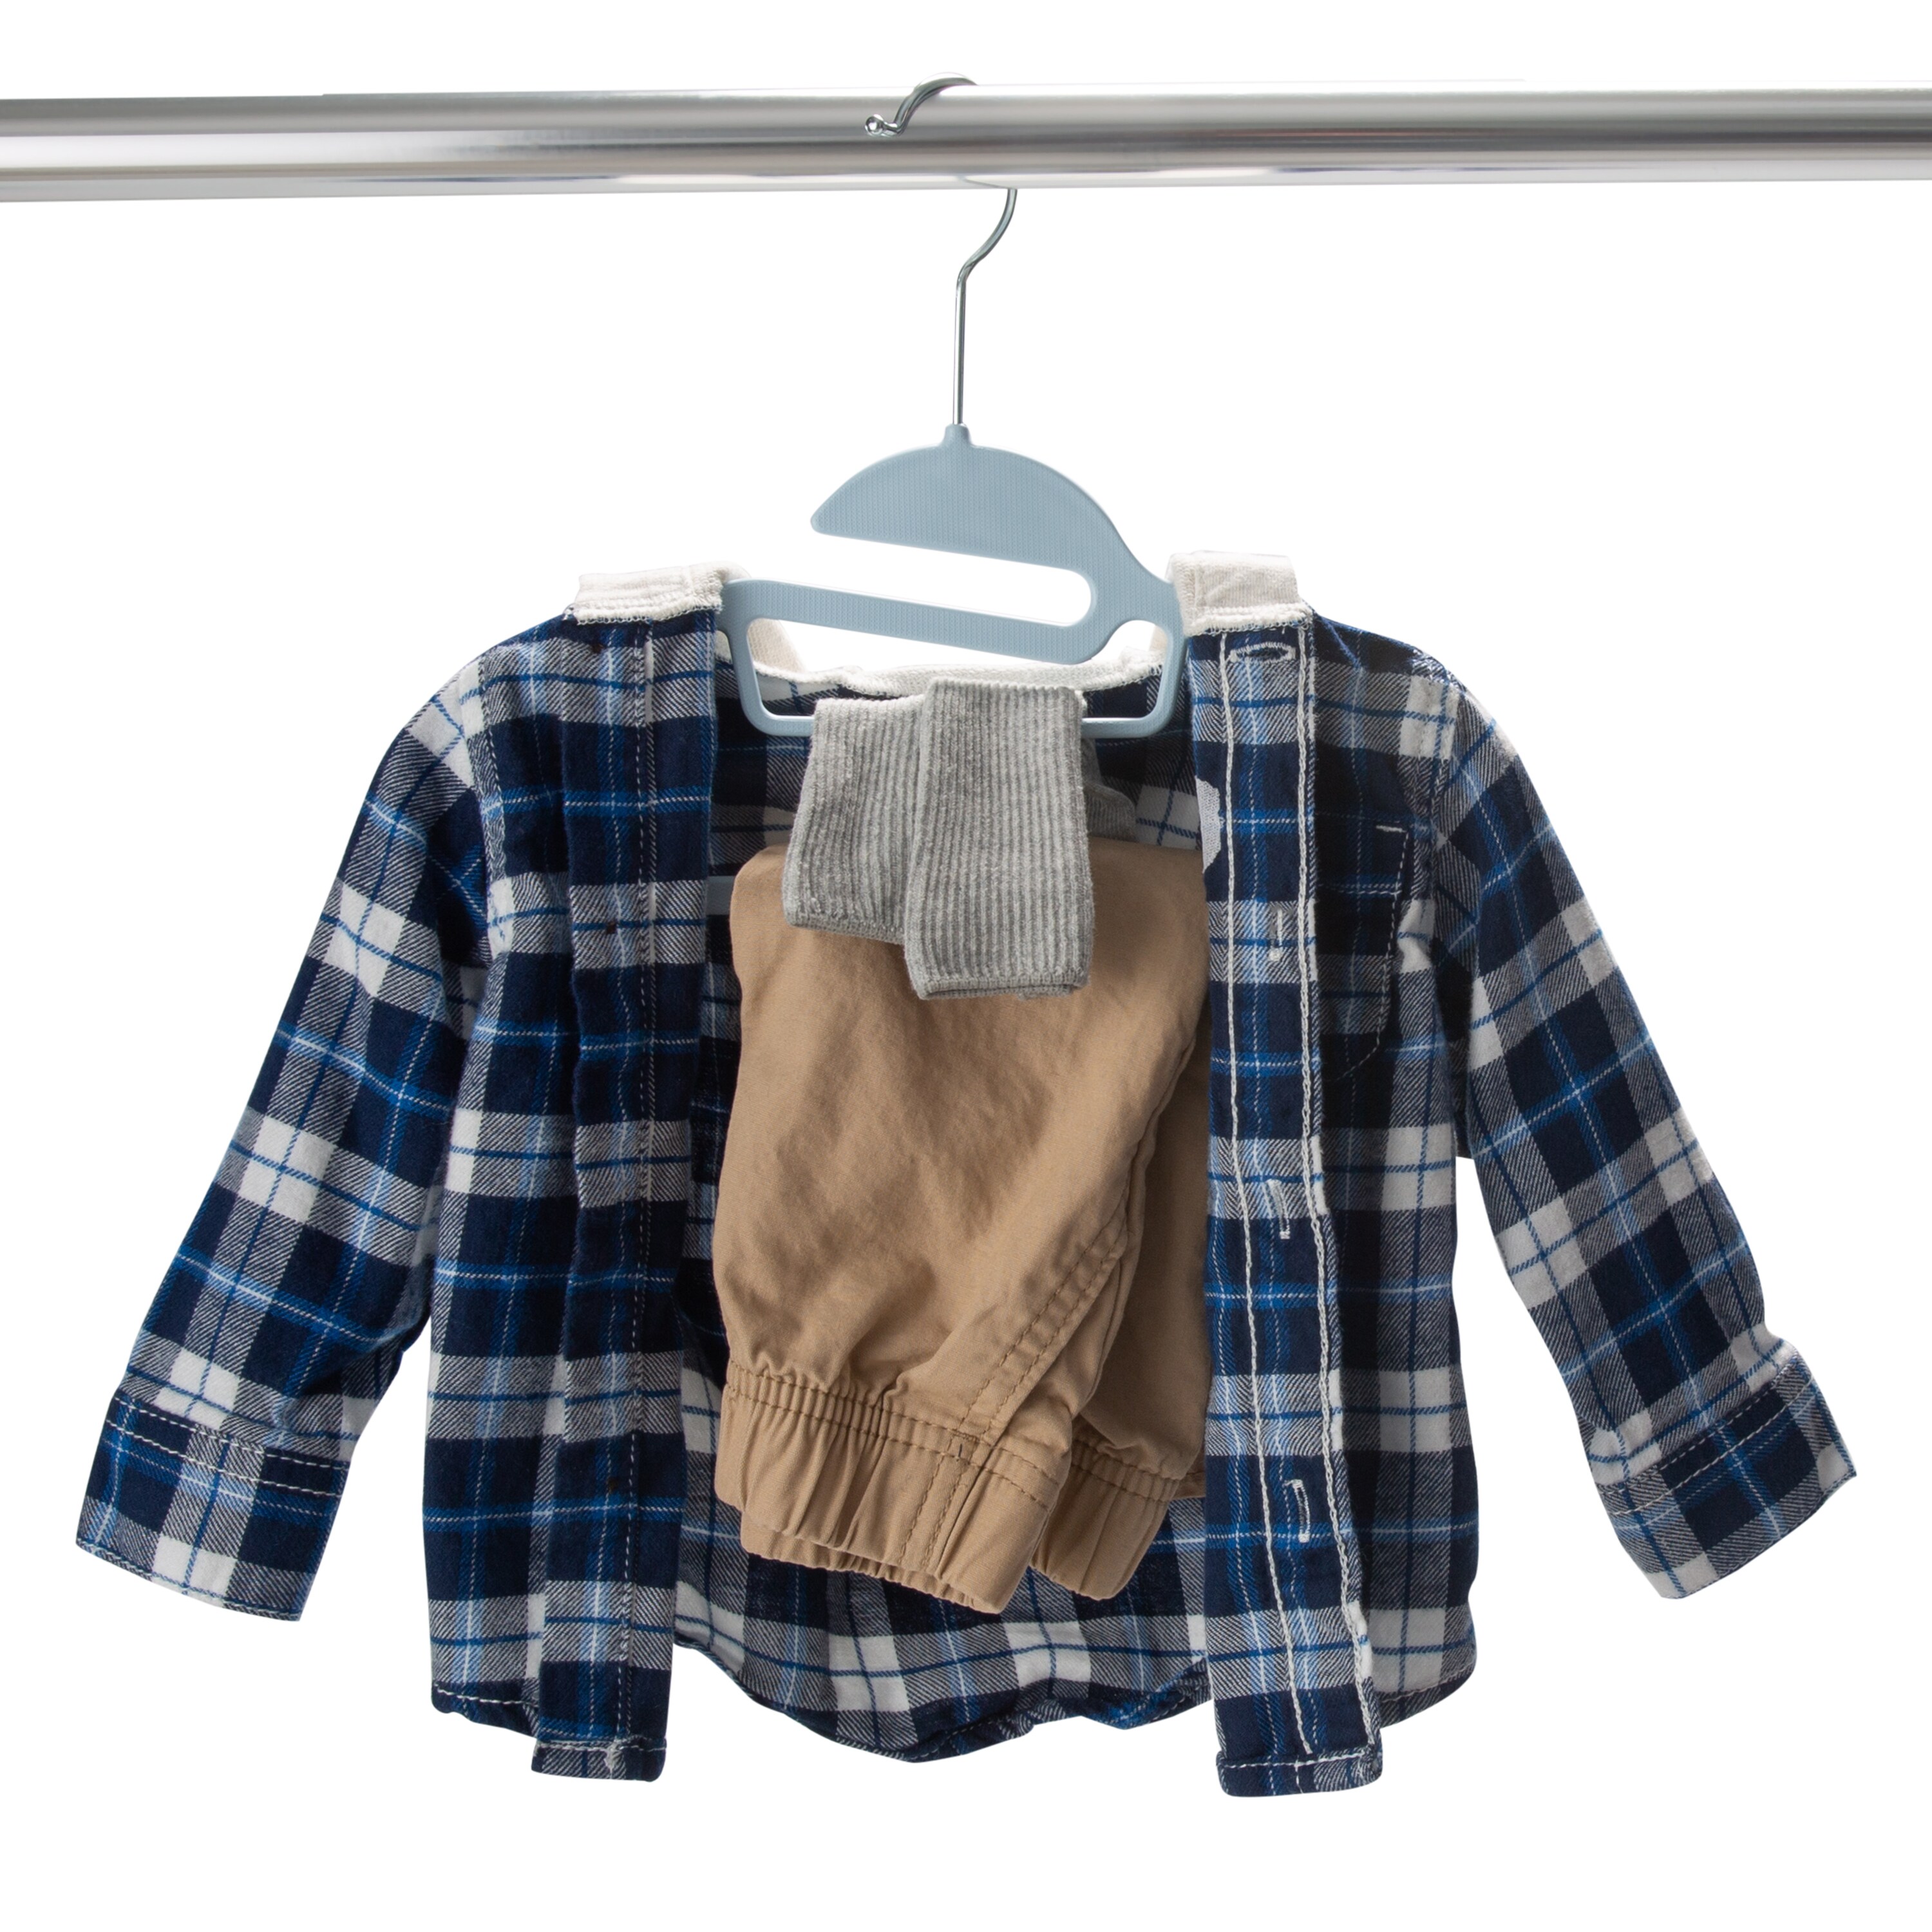 Simplify 6-Pack Children's Velvet Hangers Grey